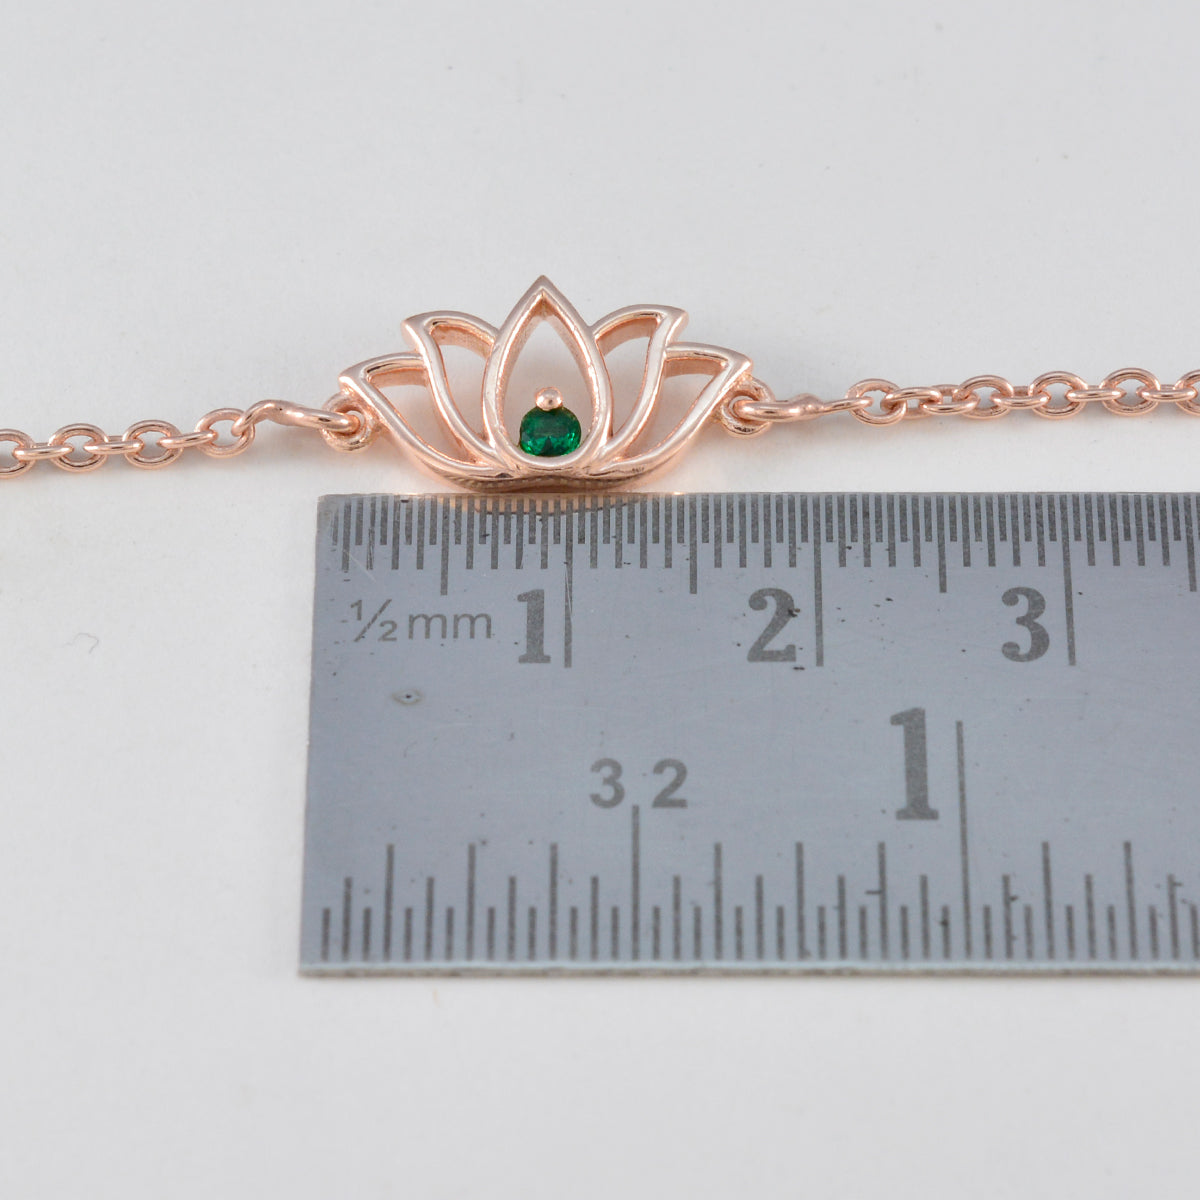 riyo элегантный браслет из стерлингового серебра 925 пробы с покрытием из розового золота для женщин, изумрудный браслет из чешского камня, браслет с оправой, браслет с подвеской в виде рыбьего крючка.